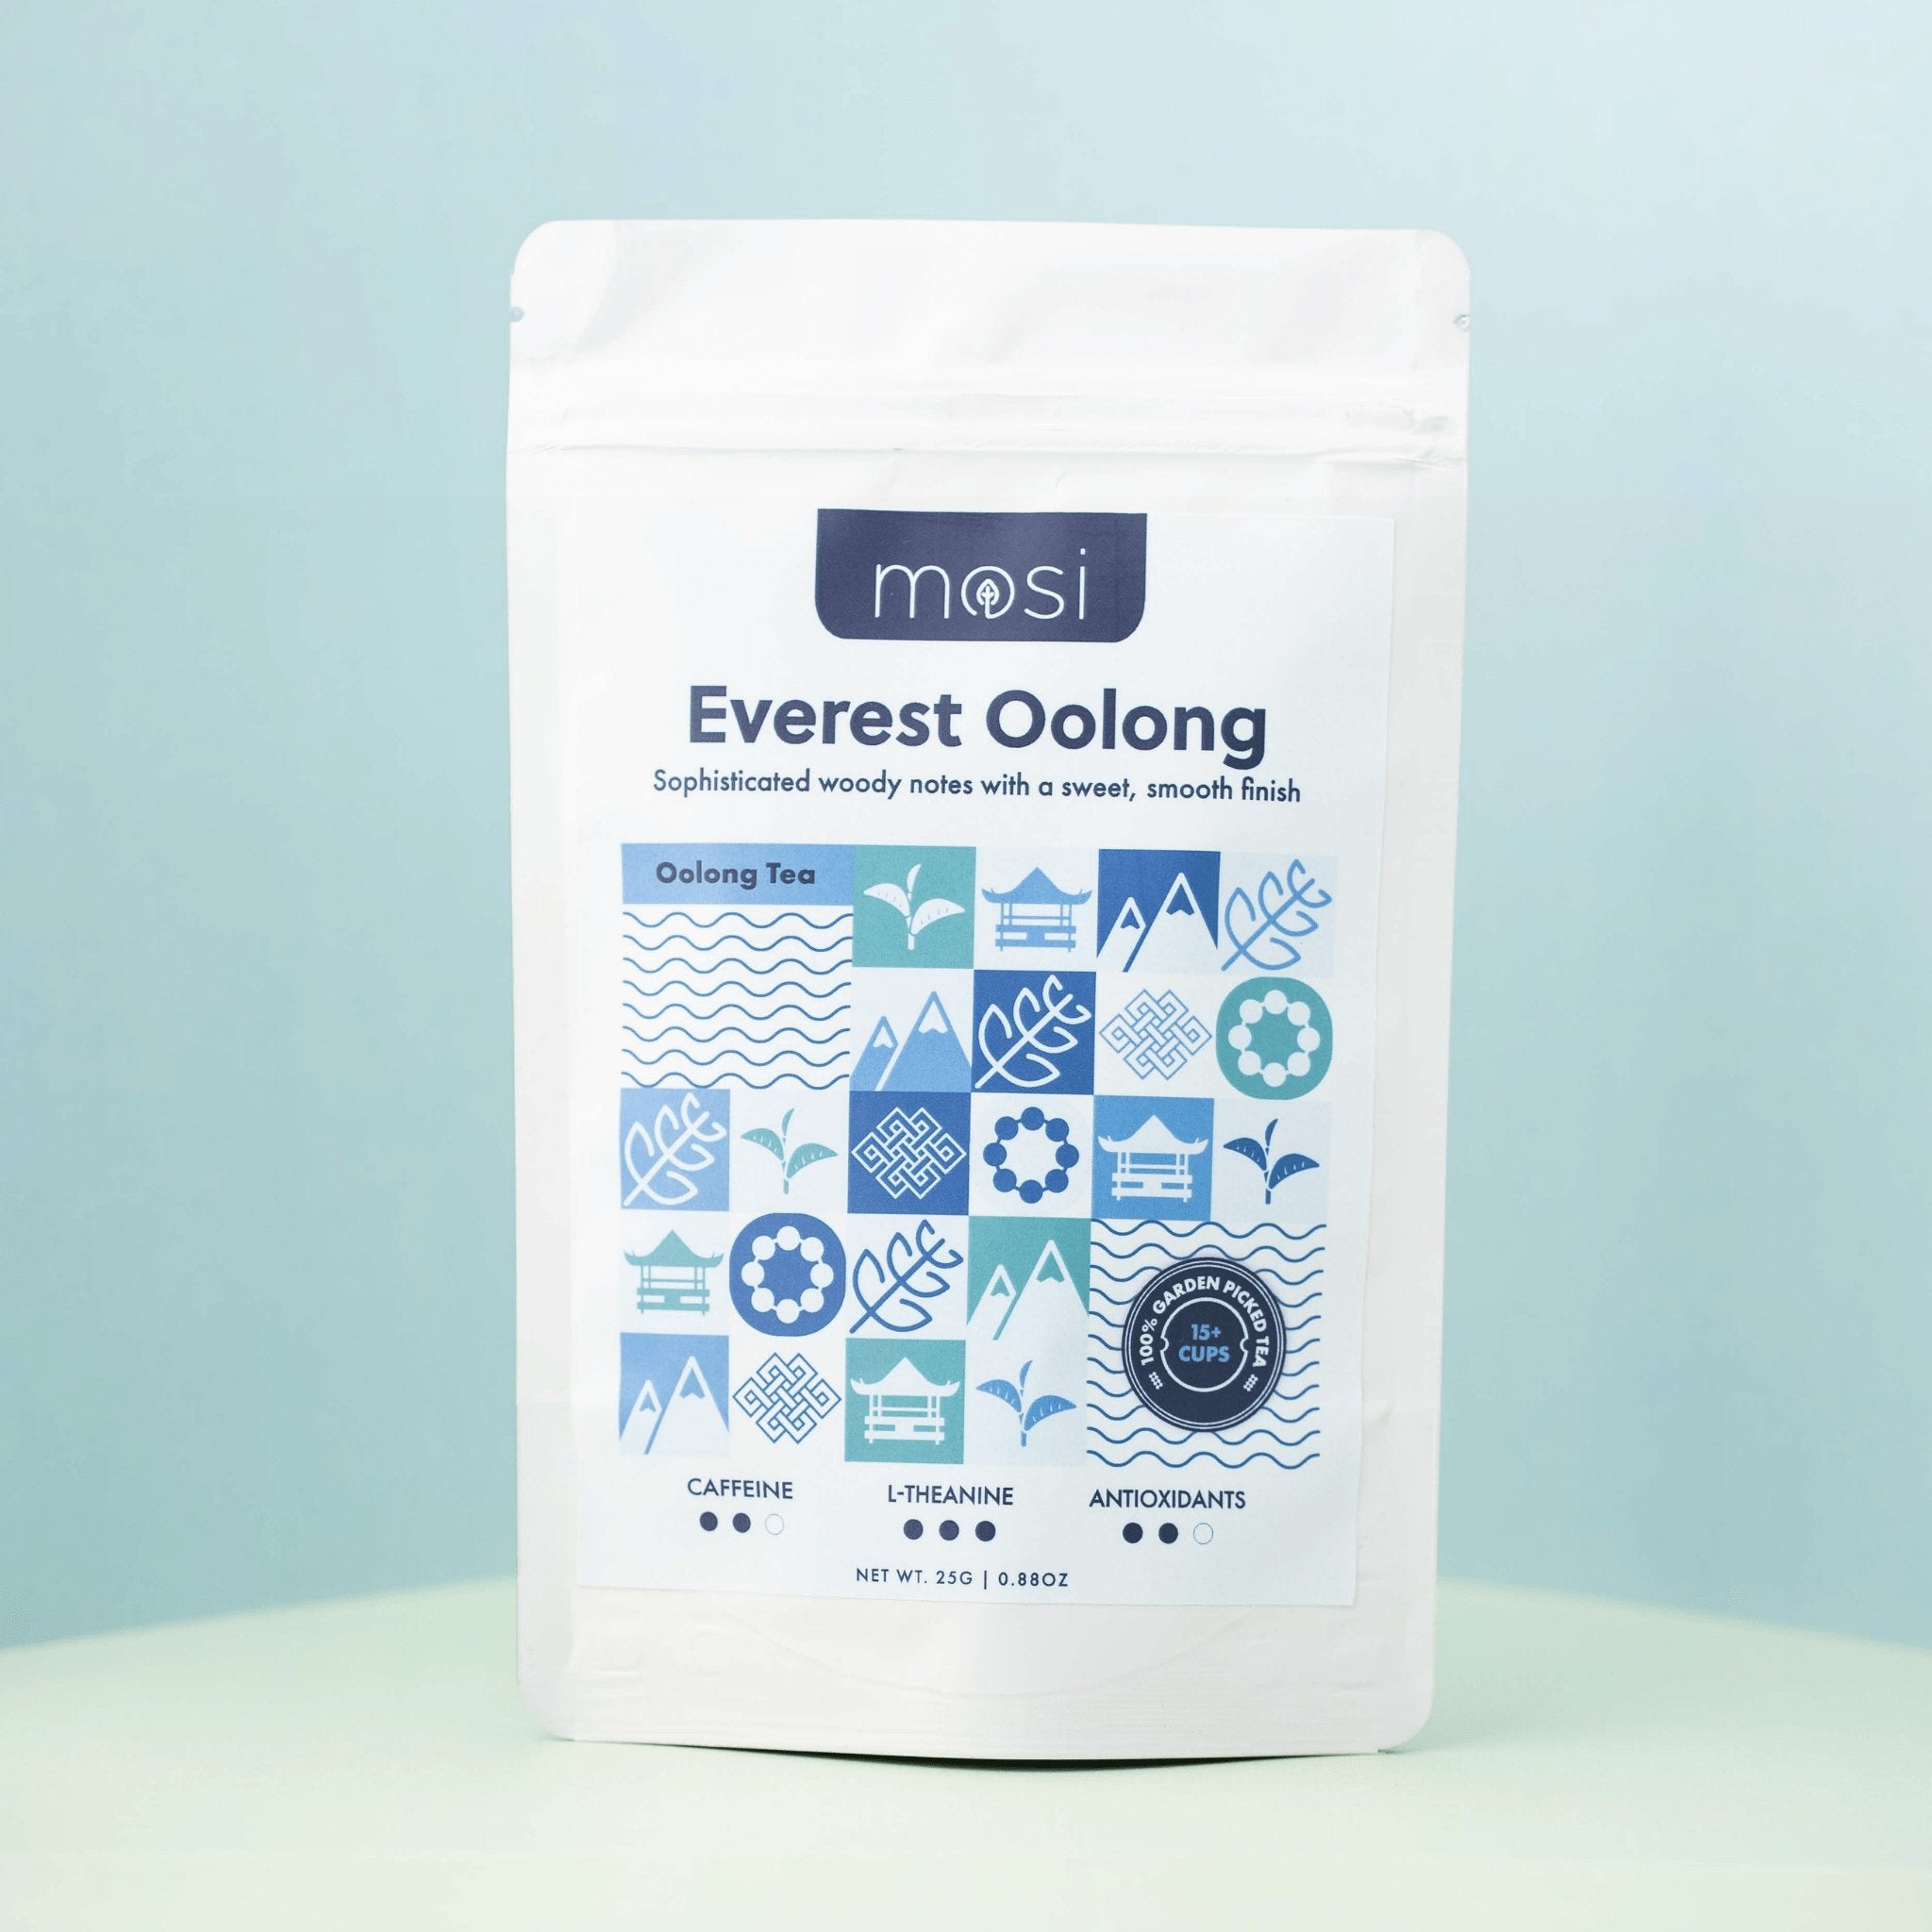 Everest Oolong - Mosi Tea